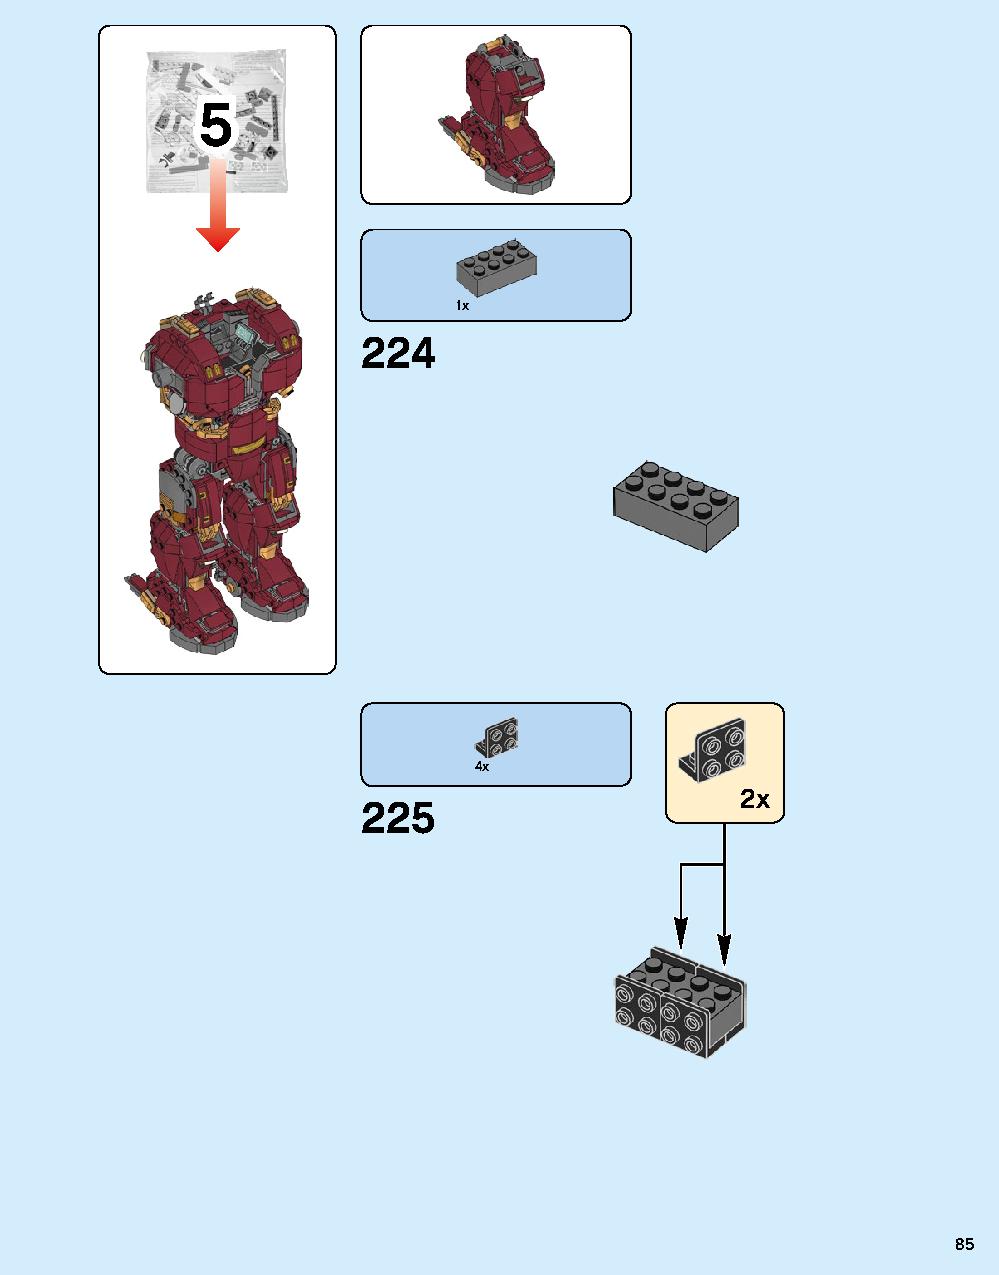 ハルクバスター：ウルトロン・エディション 76105 レゴの商品情報 レゴの説明書・組立方法 85 page